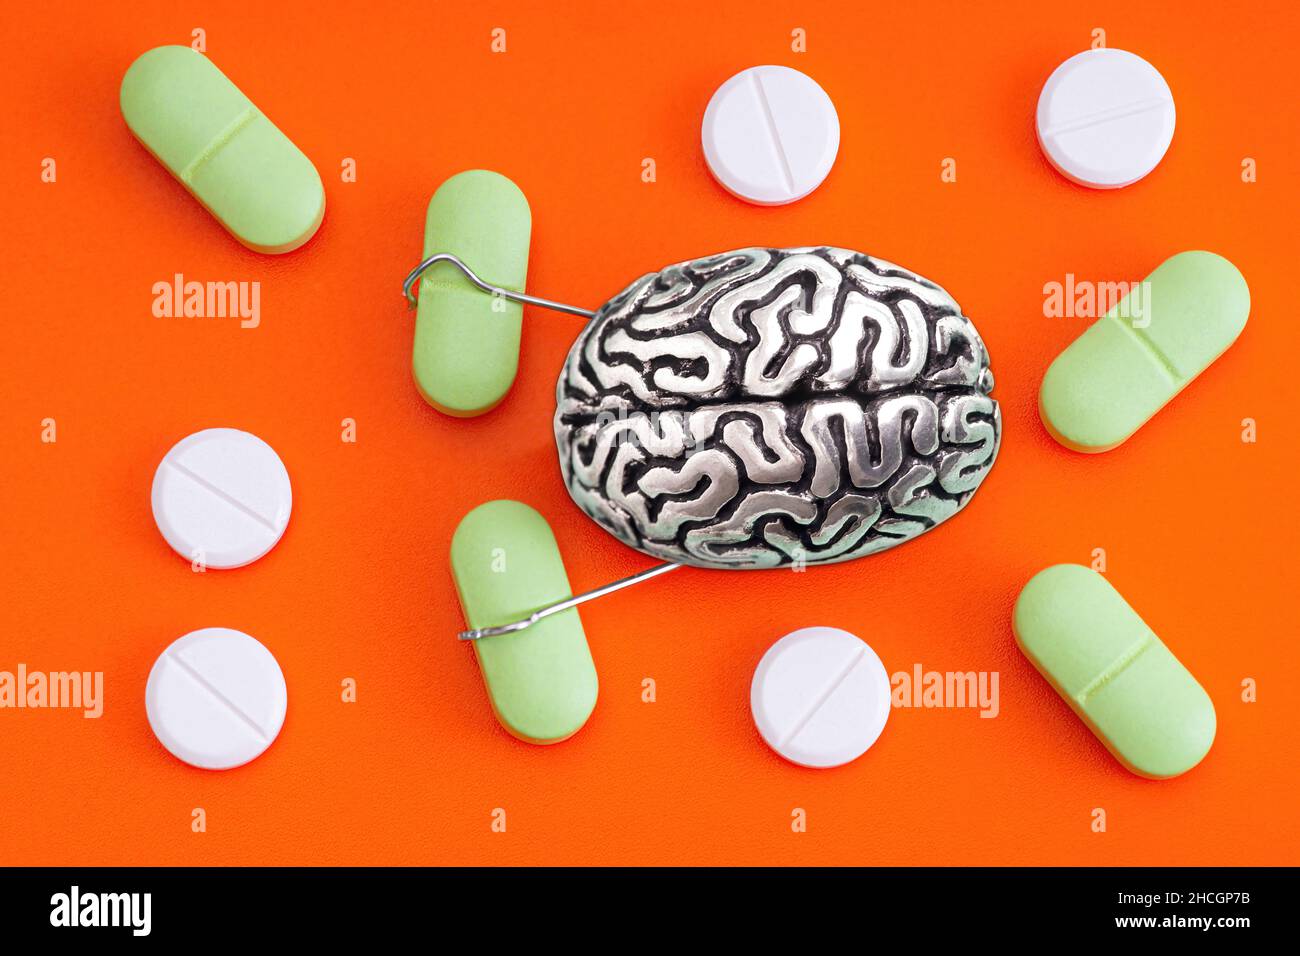 Copia anatomica di un cervello umano con mani che afferrano pillole su sfondo arancione. Concetto di tossicodipendenza. Foto Stock